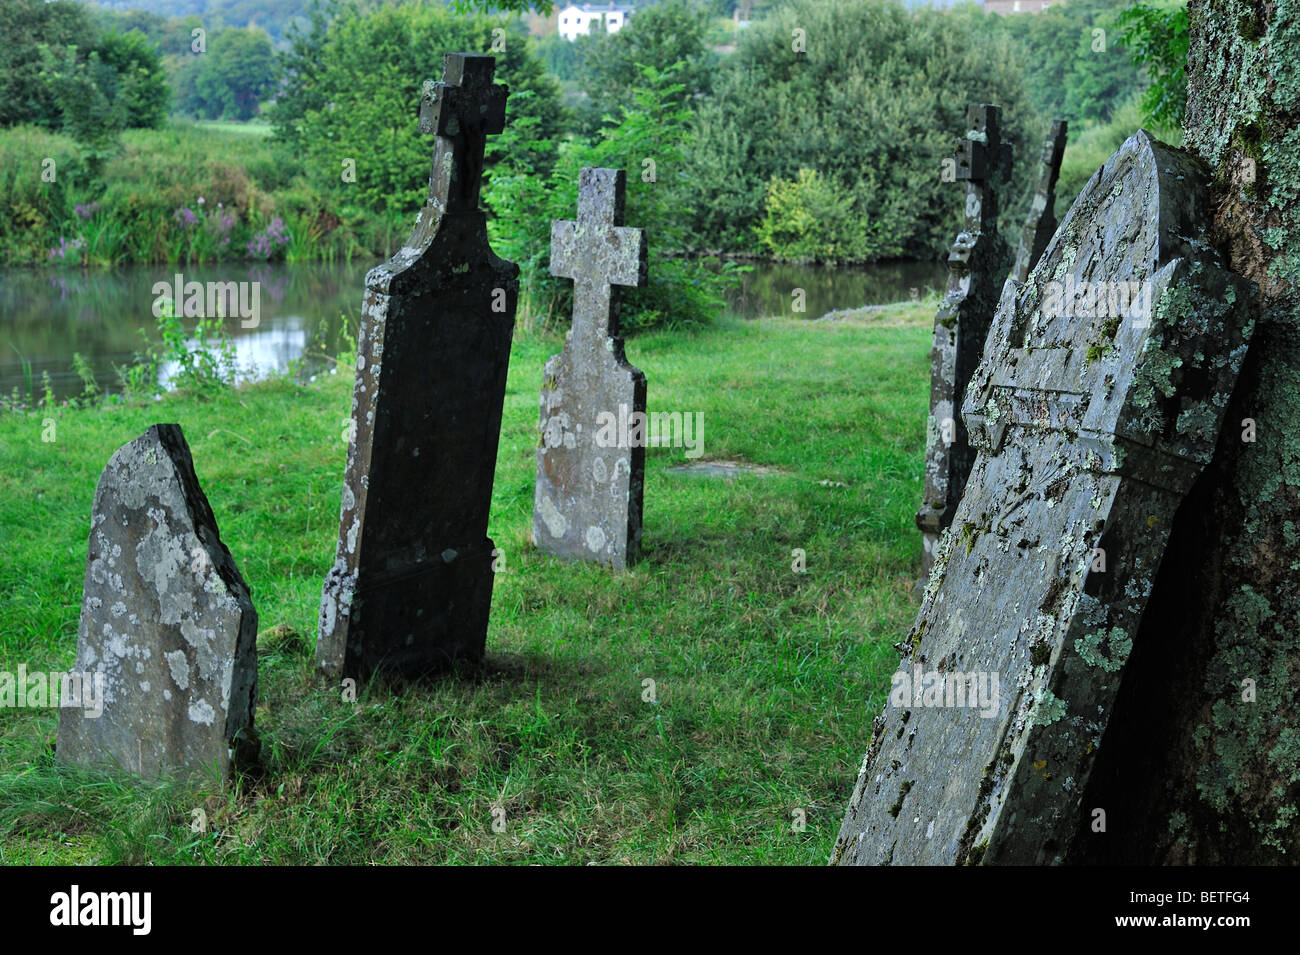 Lapidi sulle tombe del vecchio cimitero lungo il fiume Semois a Mortehan, Lussemburgo, la Vallonia, Ardenne belghe, Belgio Foto Stock